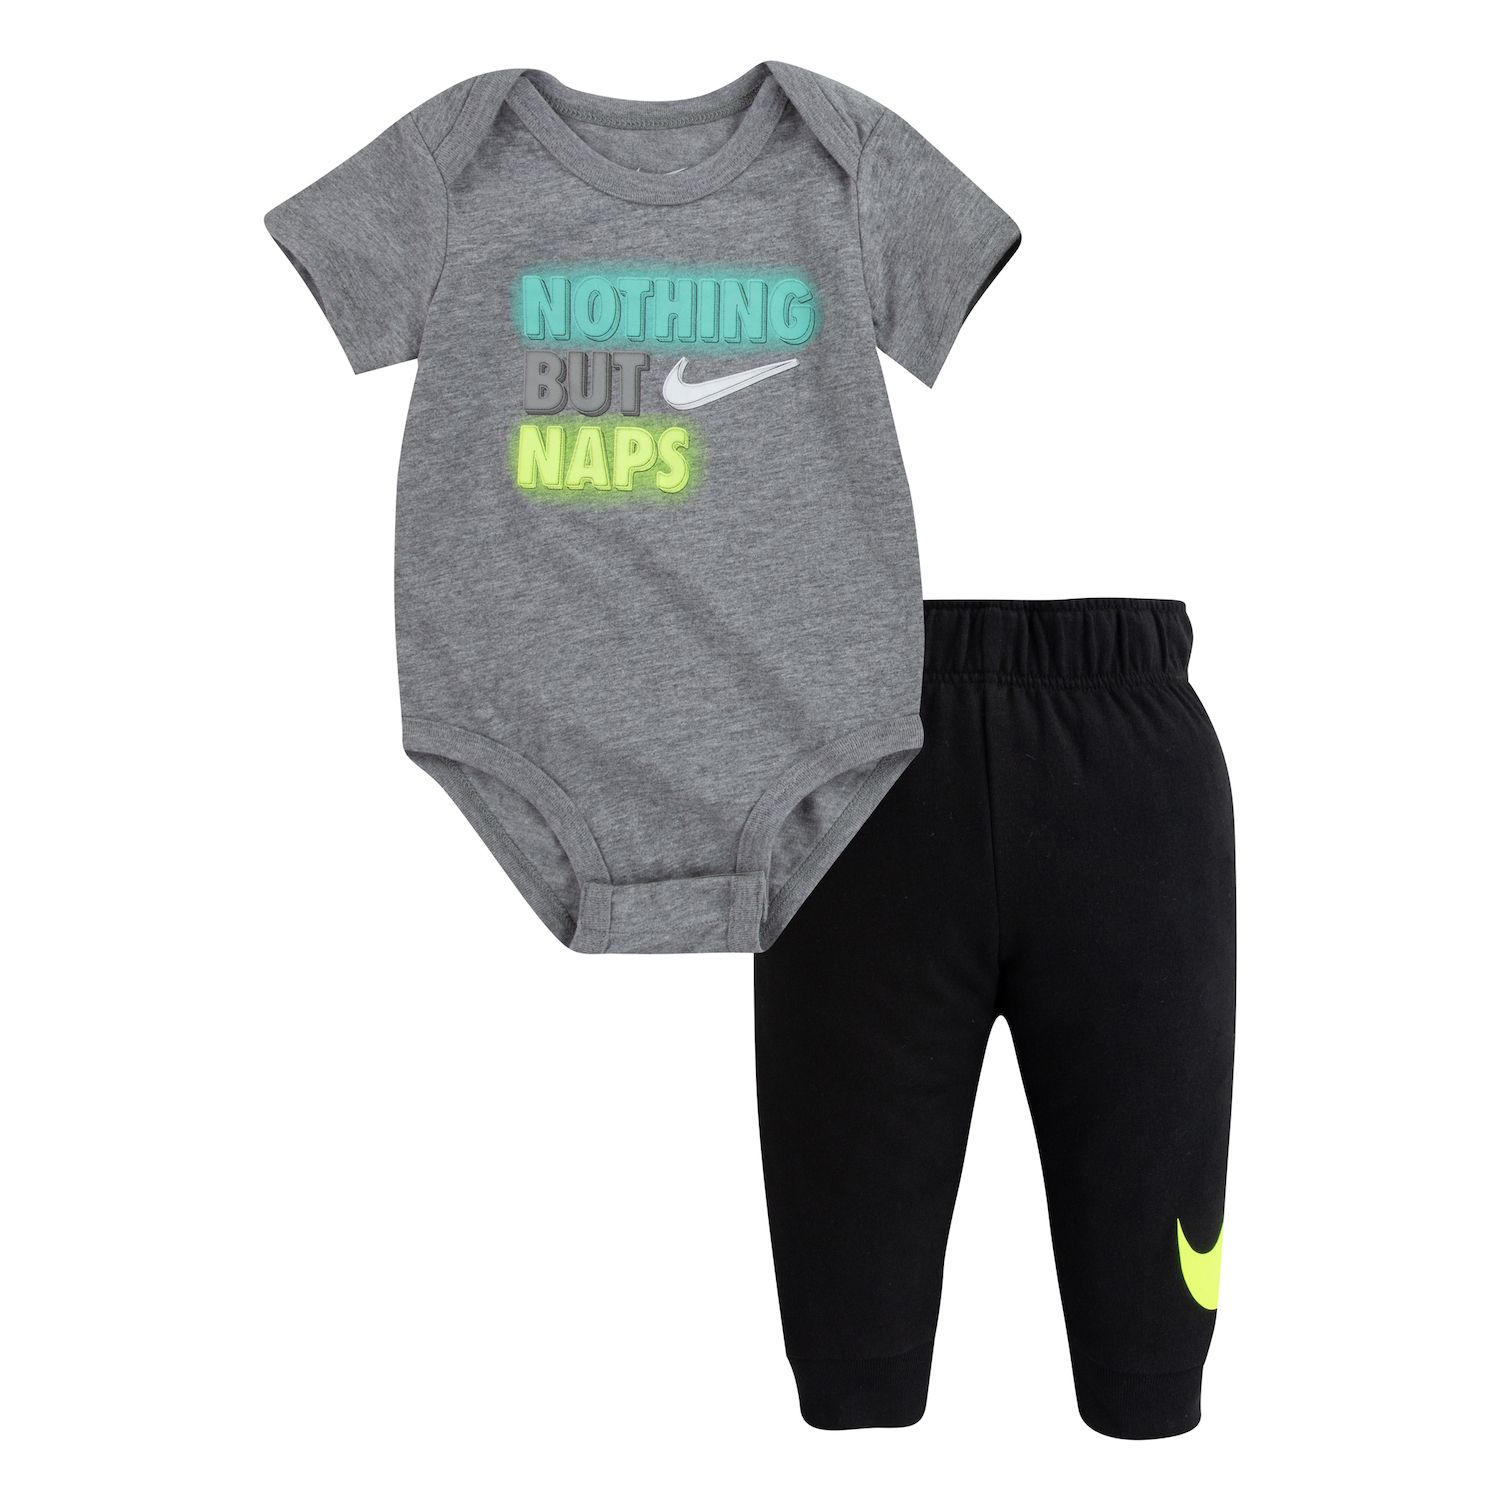 Nike Baby Boys' Clothing | Kohl's